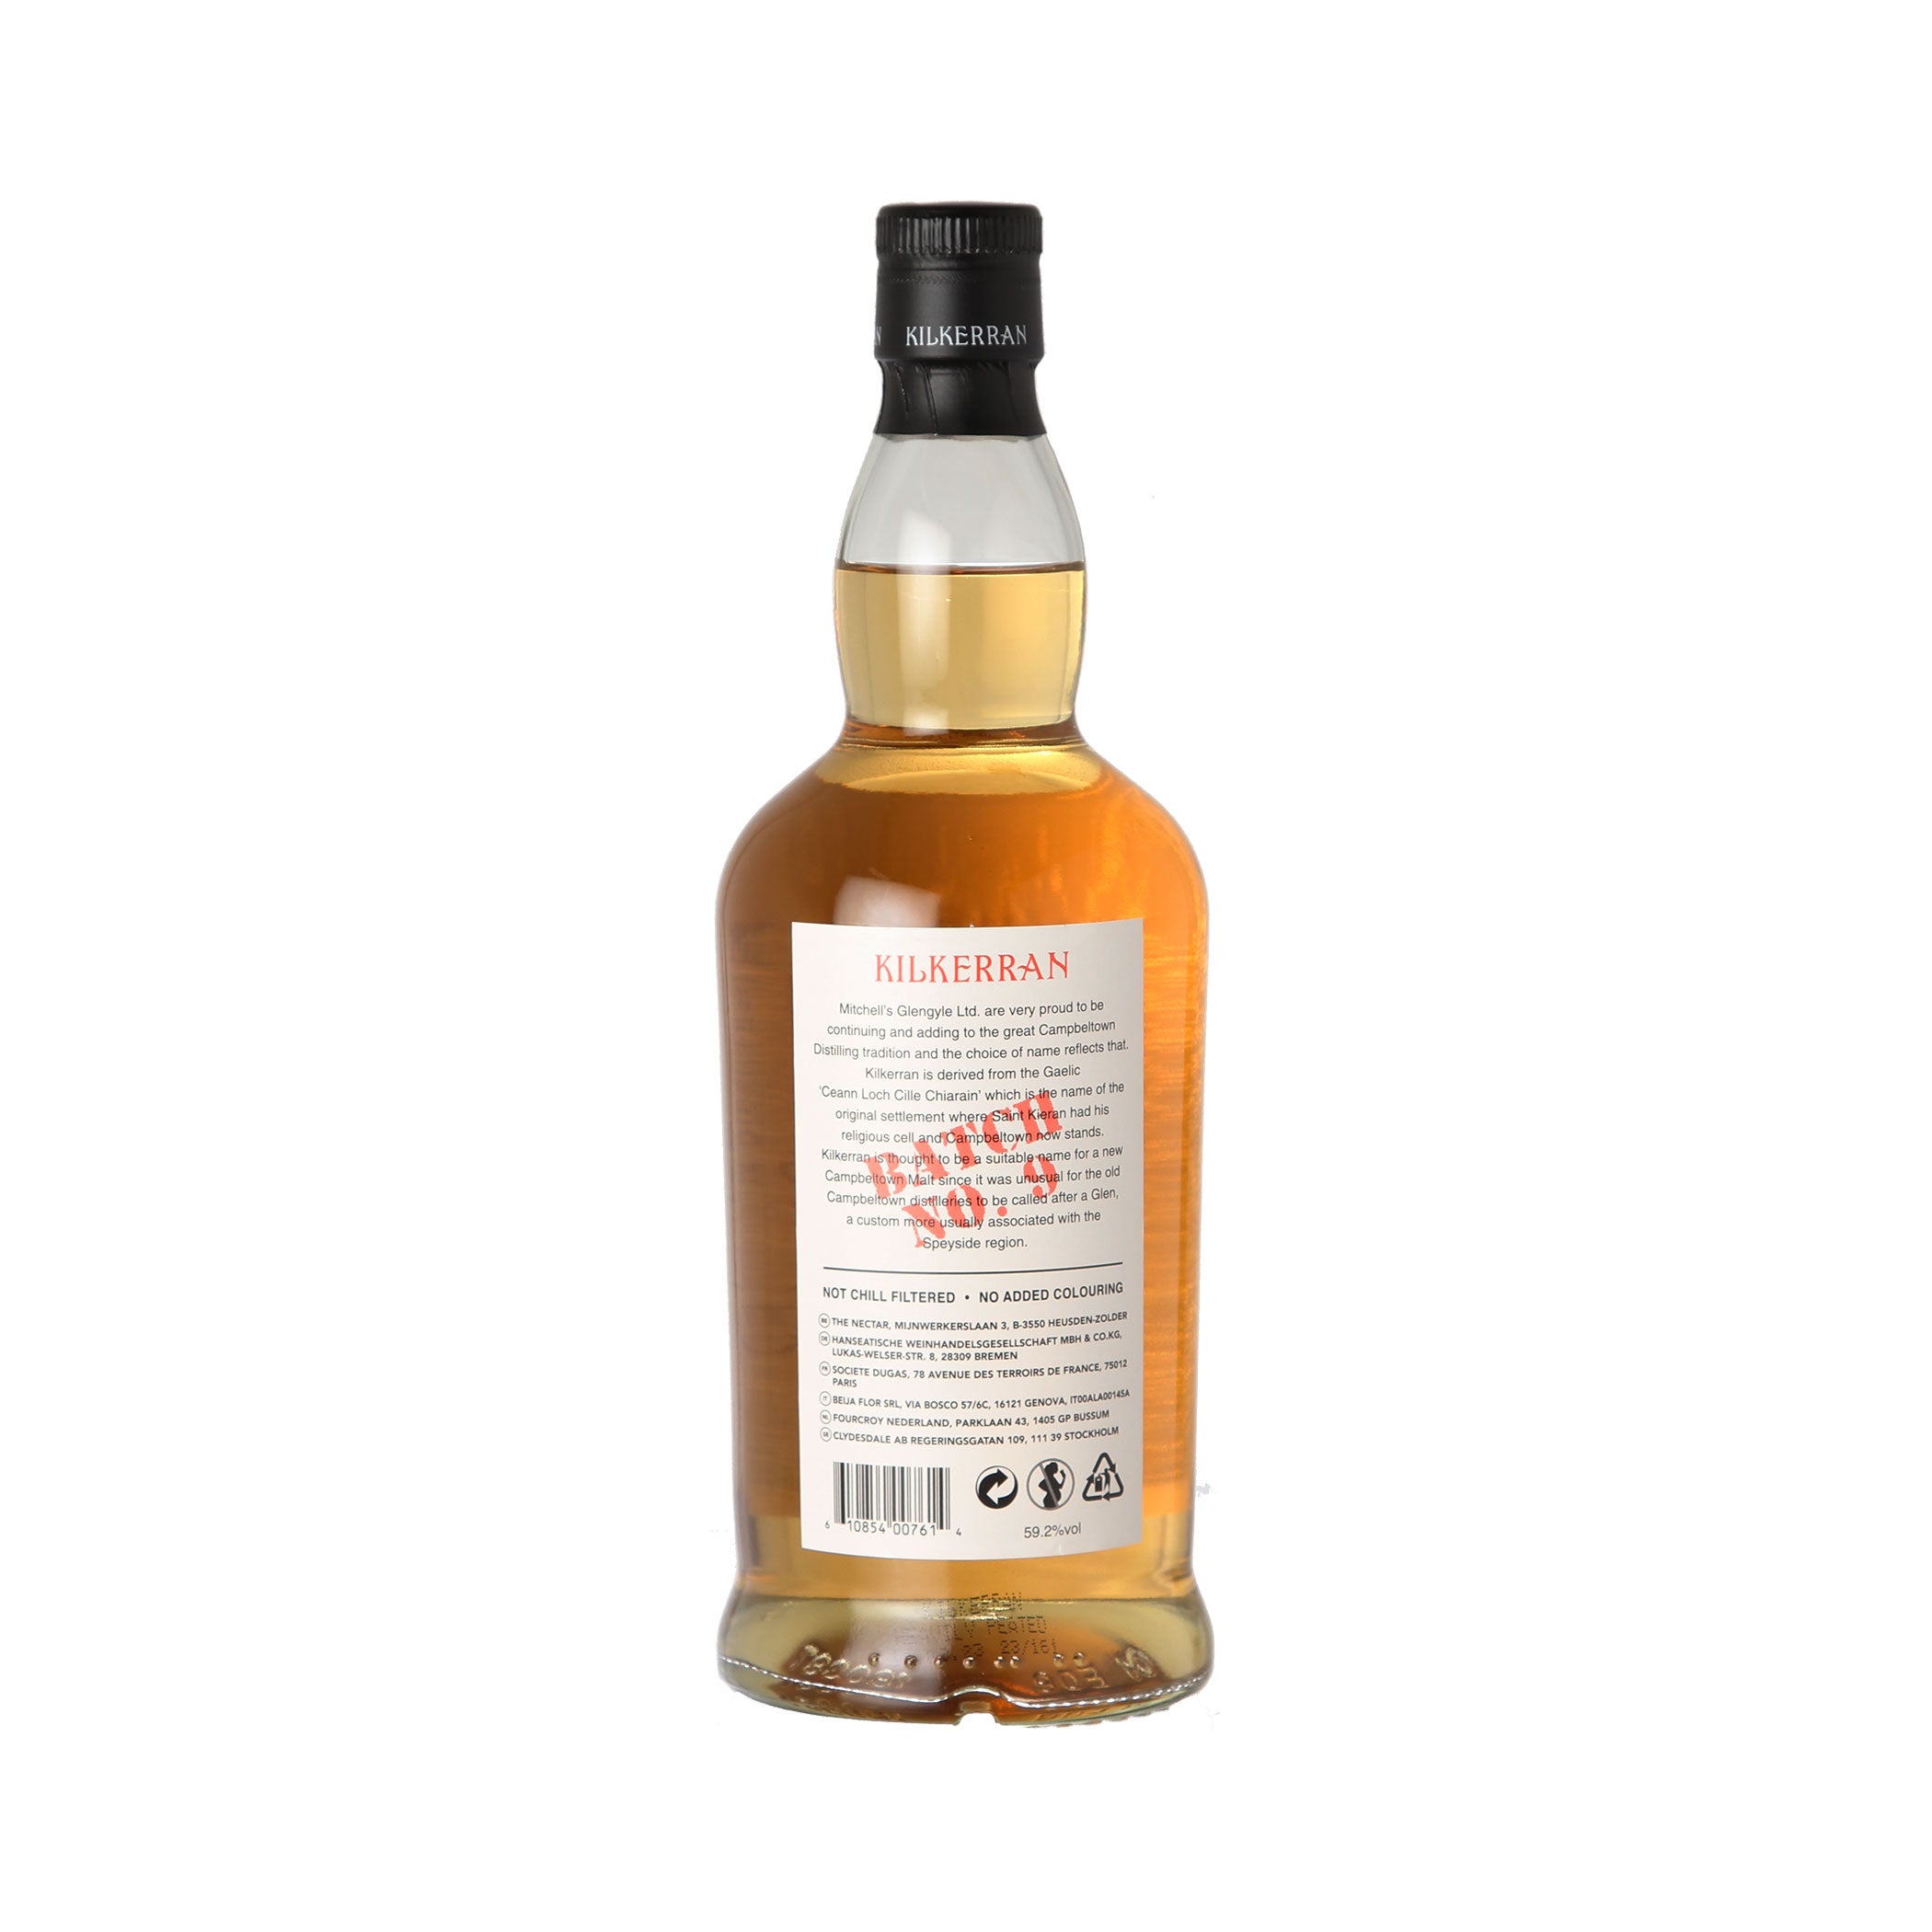 Kilkerran Heavily Peated - Batch 9 - Cask Strength - Single Malt Scotch Whisky